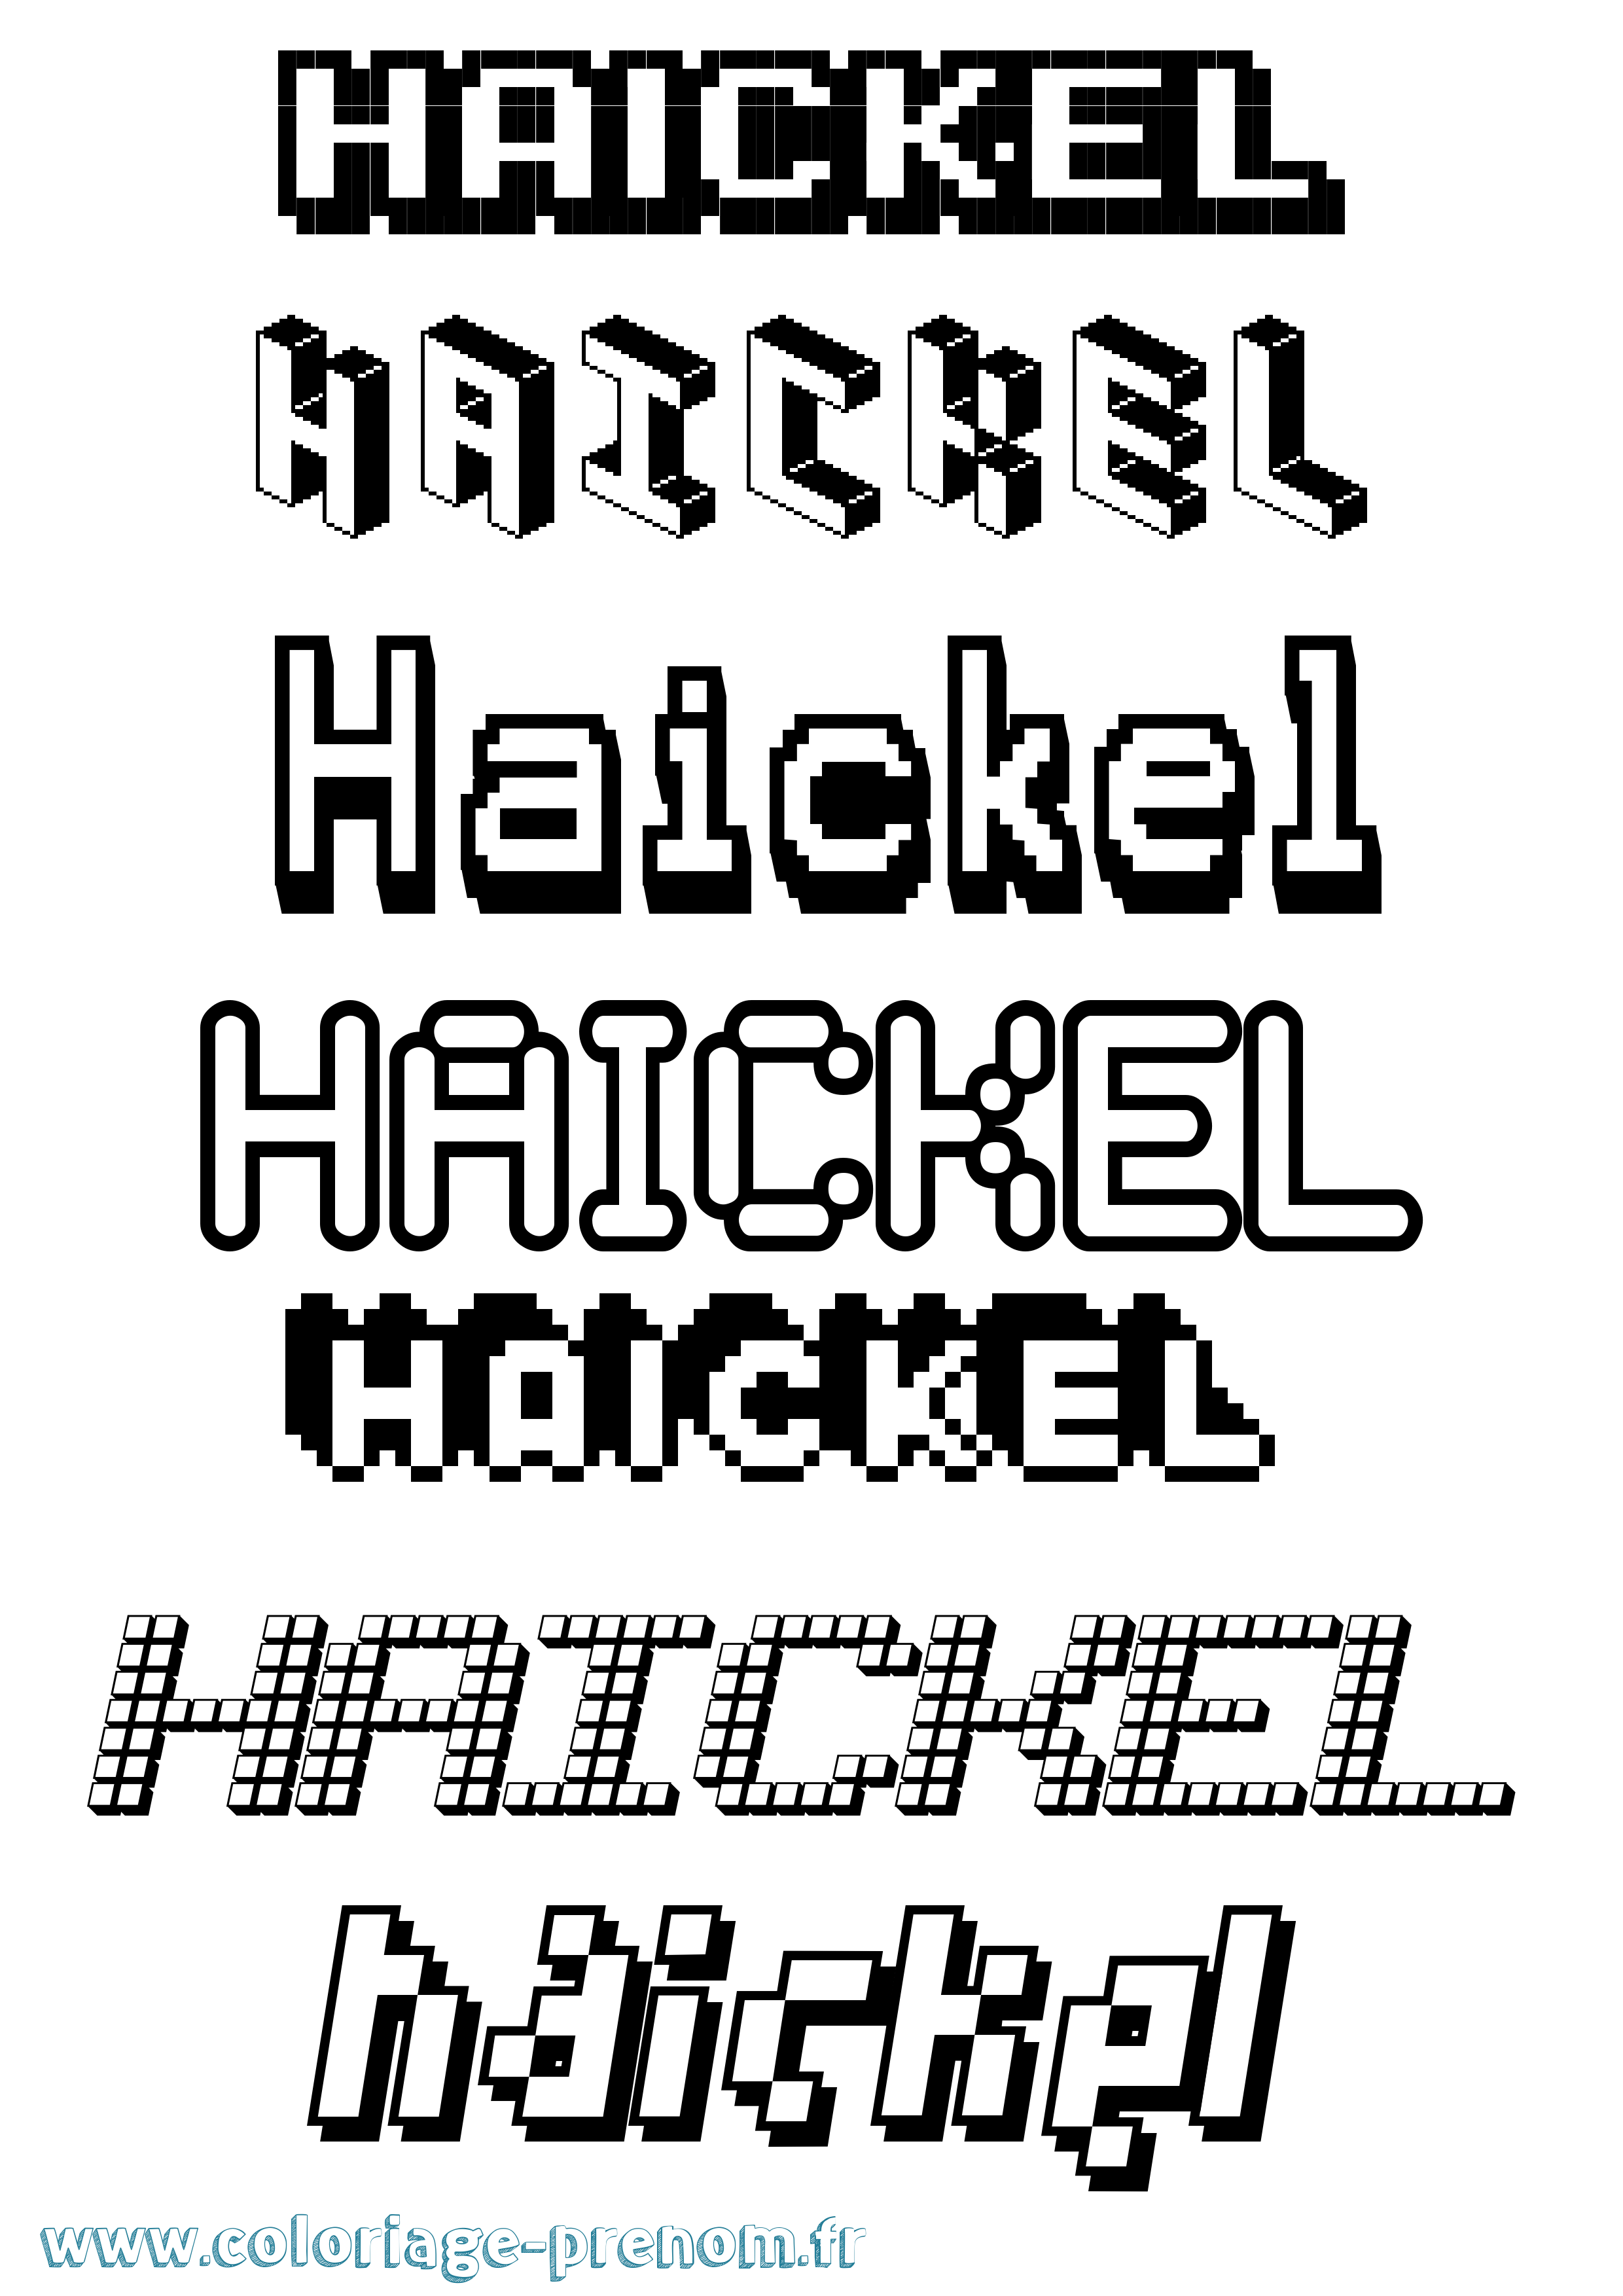 Coloriage prénom Haickel Pixel